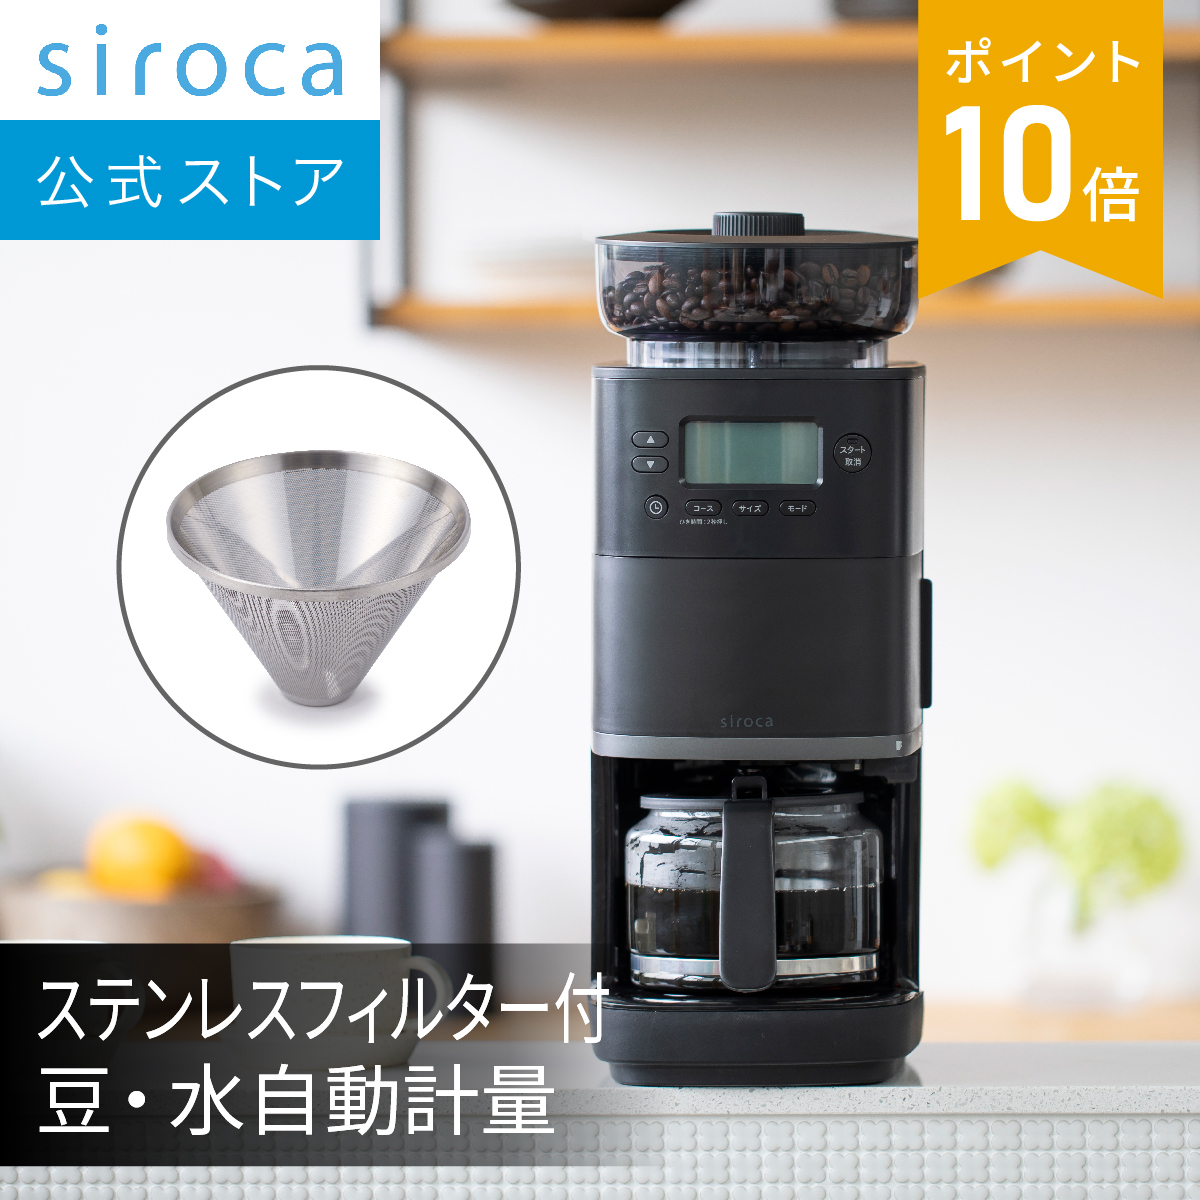 【楽天市場】【シロカ公式】コーン式全自動コーヒーメーカー 